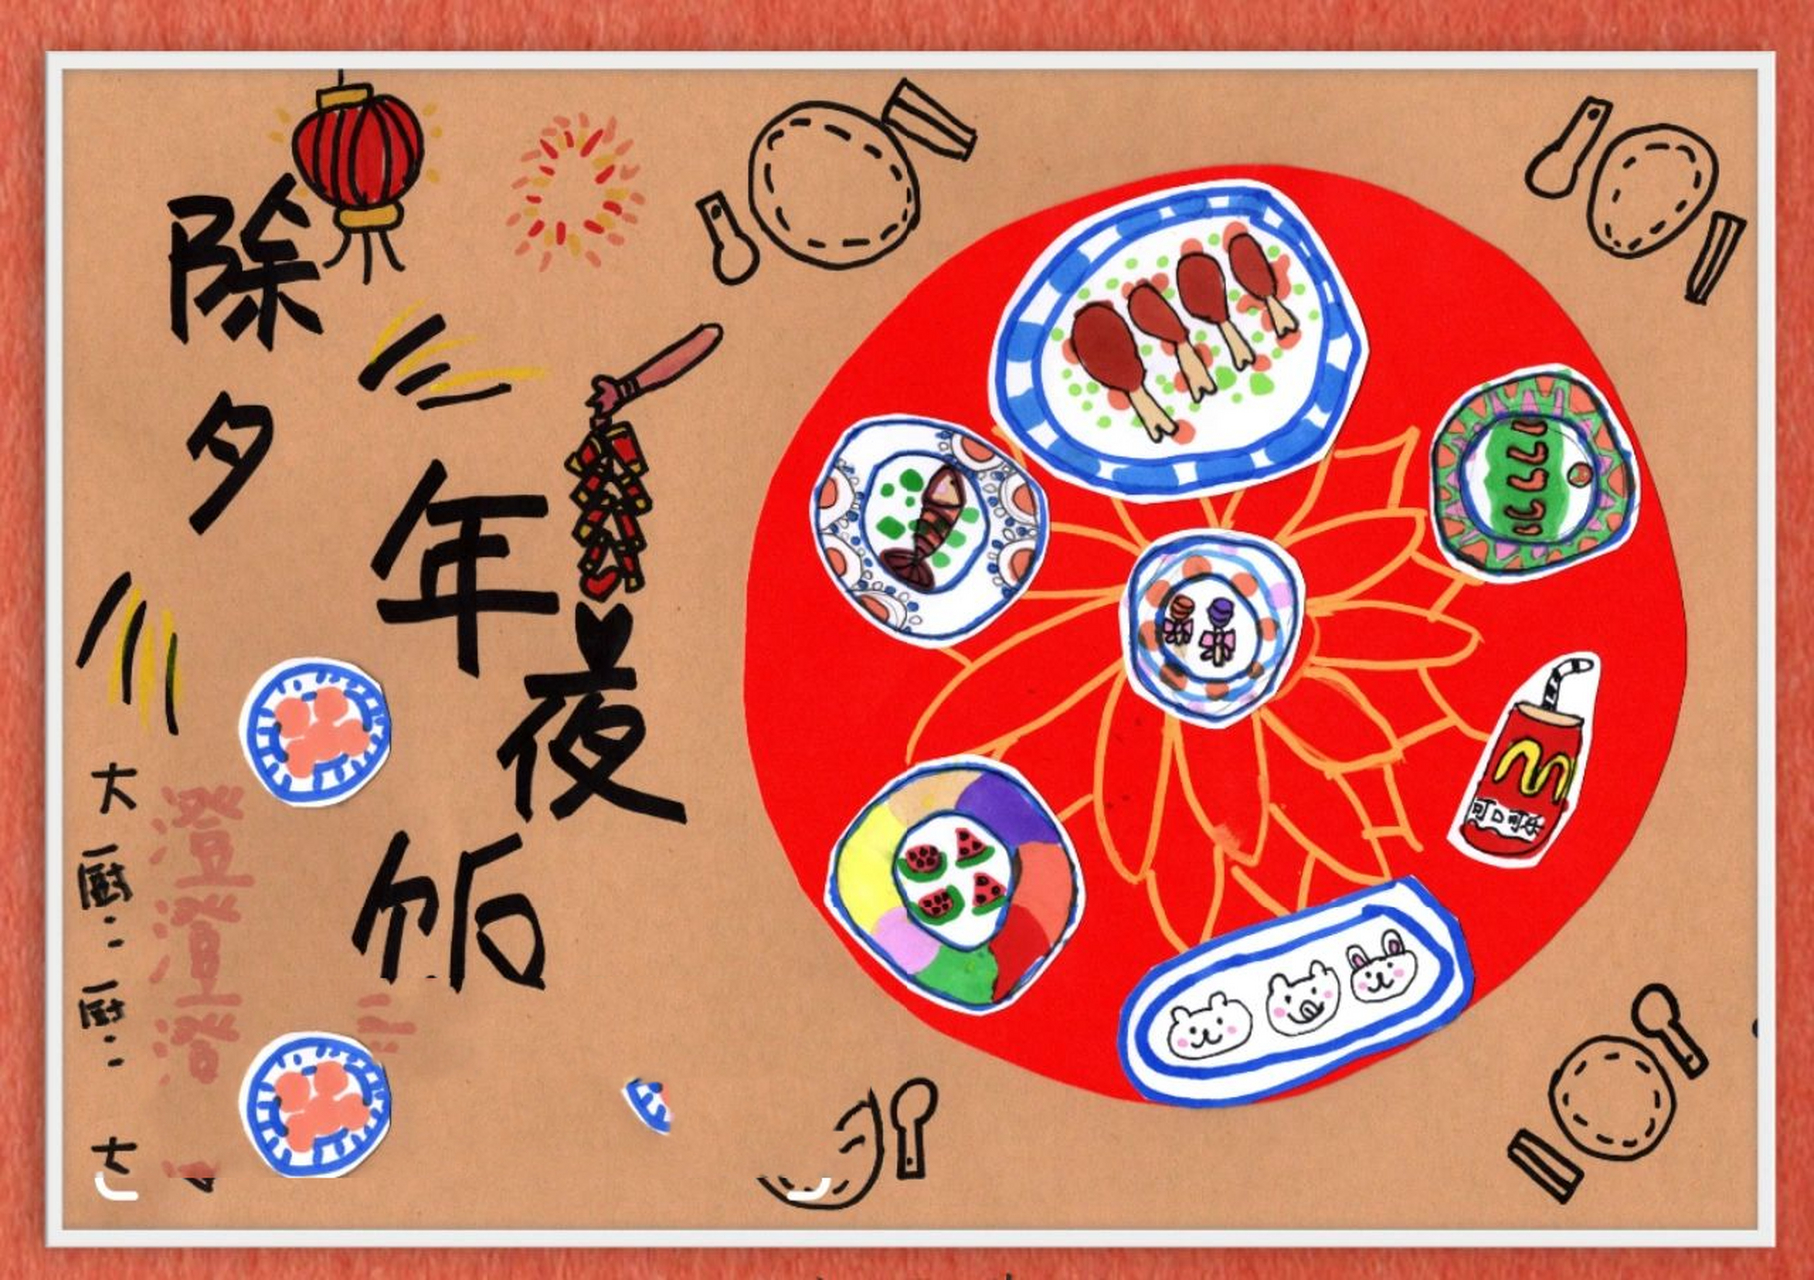 红色卡纸,马克笔,白卡纸 教学要点:春节是中国的四大传统节日之一